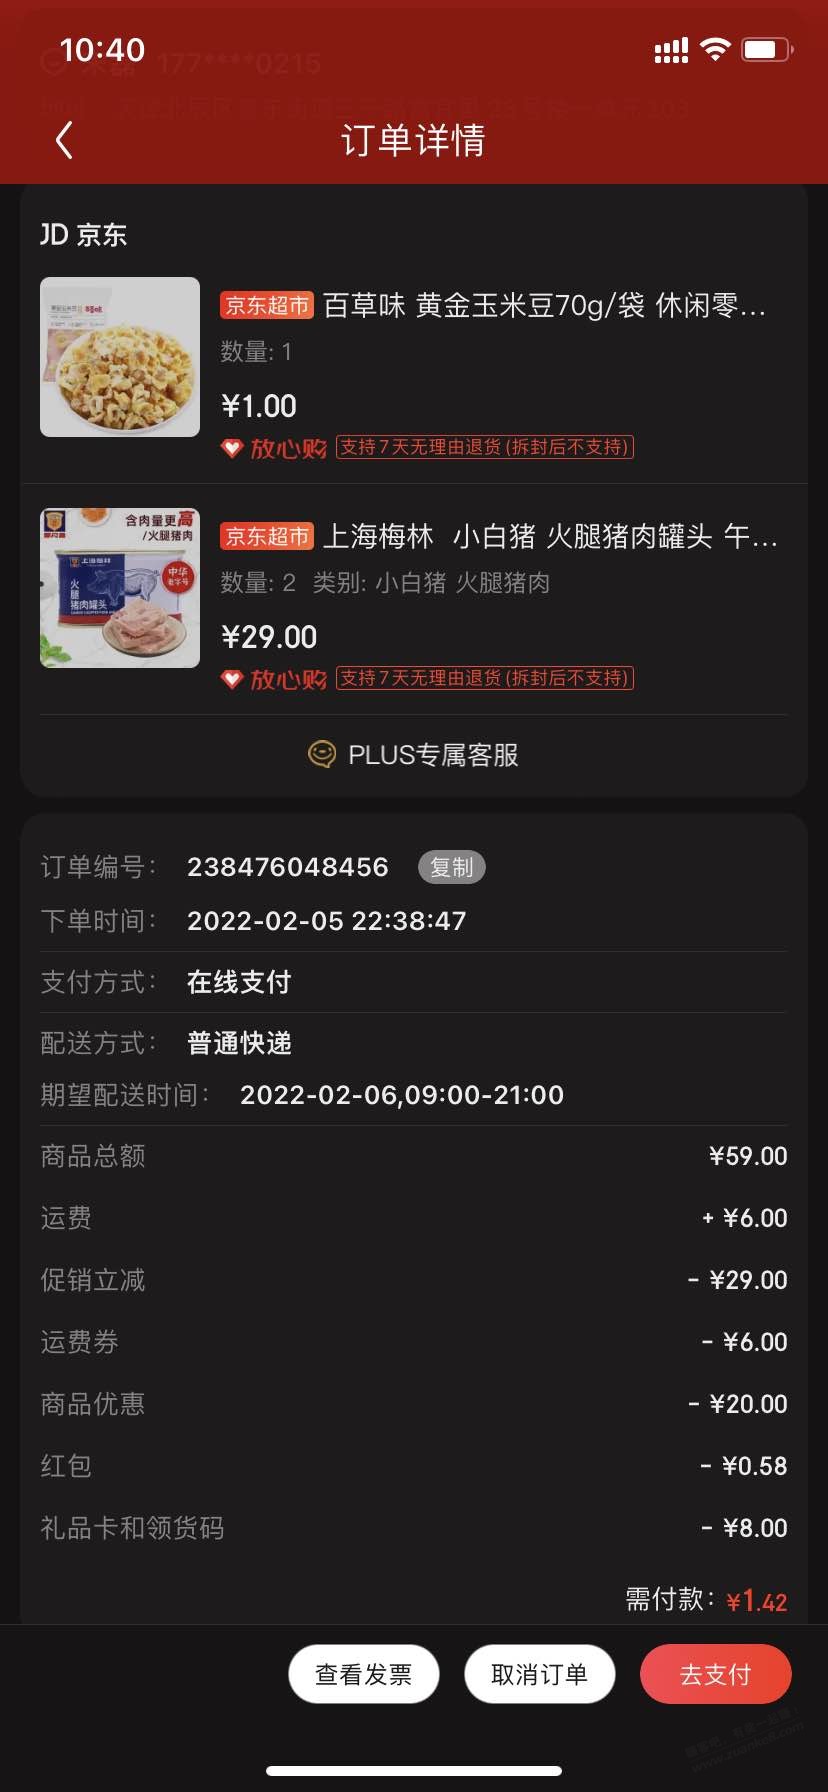 59-20作业-梅林午餐肉两盒不到十元-惠小助(52huixz.com)